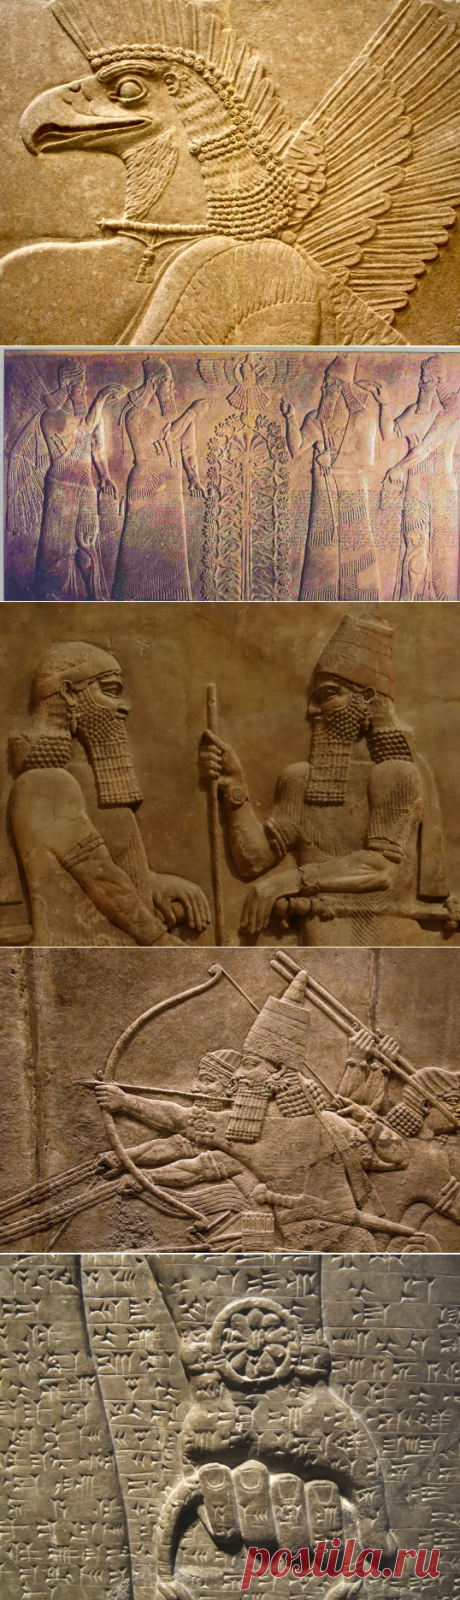 Ассирия: что случилось с первой империей в истории | Русская семерка